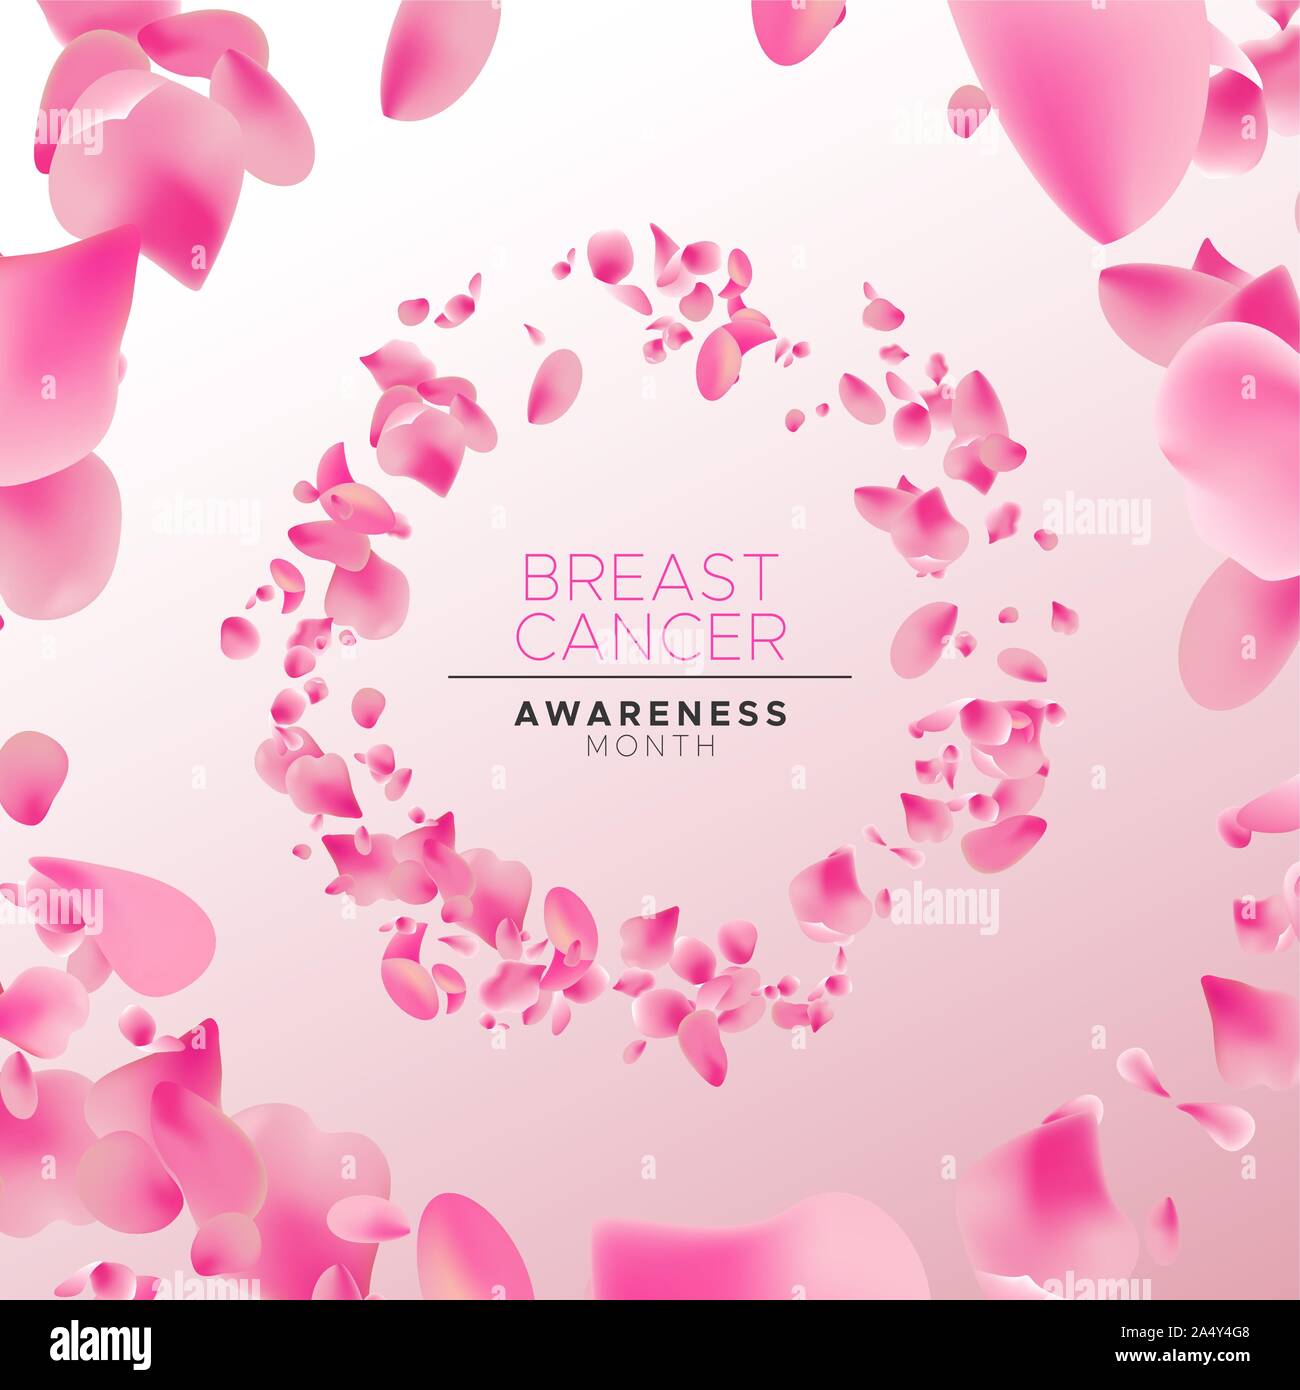 Brustkrebs-bewußtsein Monat floral Banner Abbildung, Kreis Rahmen aus rose Blumenblätter für Gesundheit Konzept der Kampagne Hintergrund. Stock Vektor